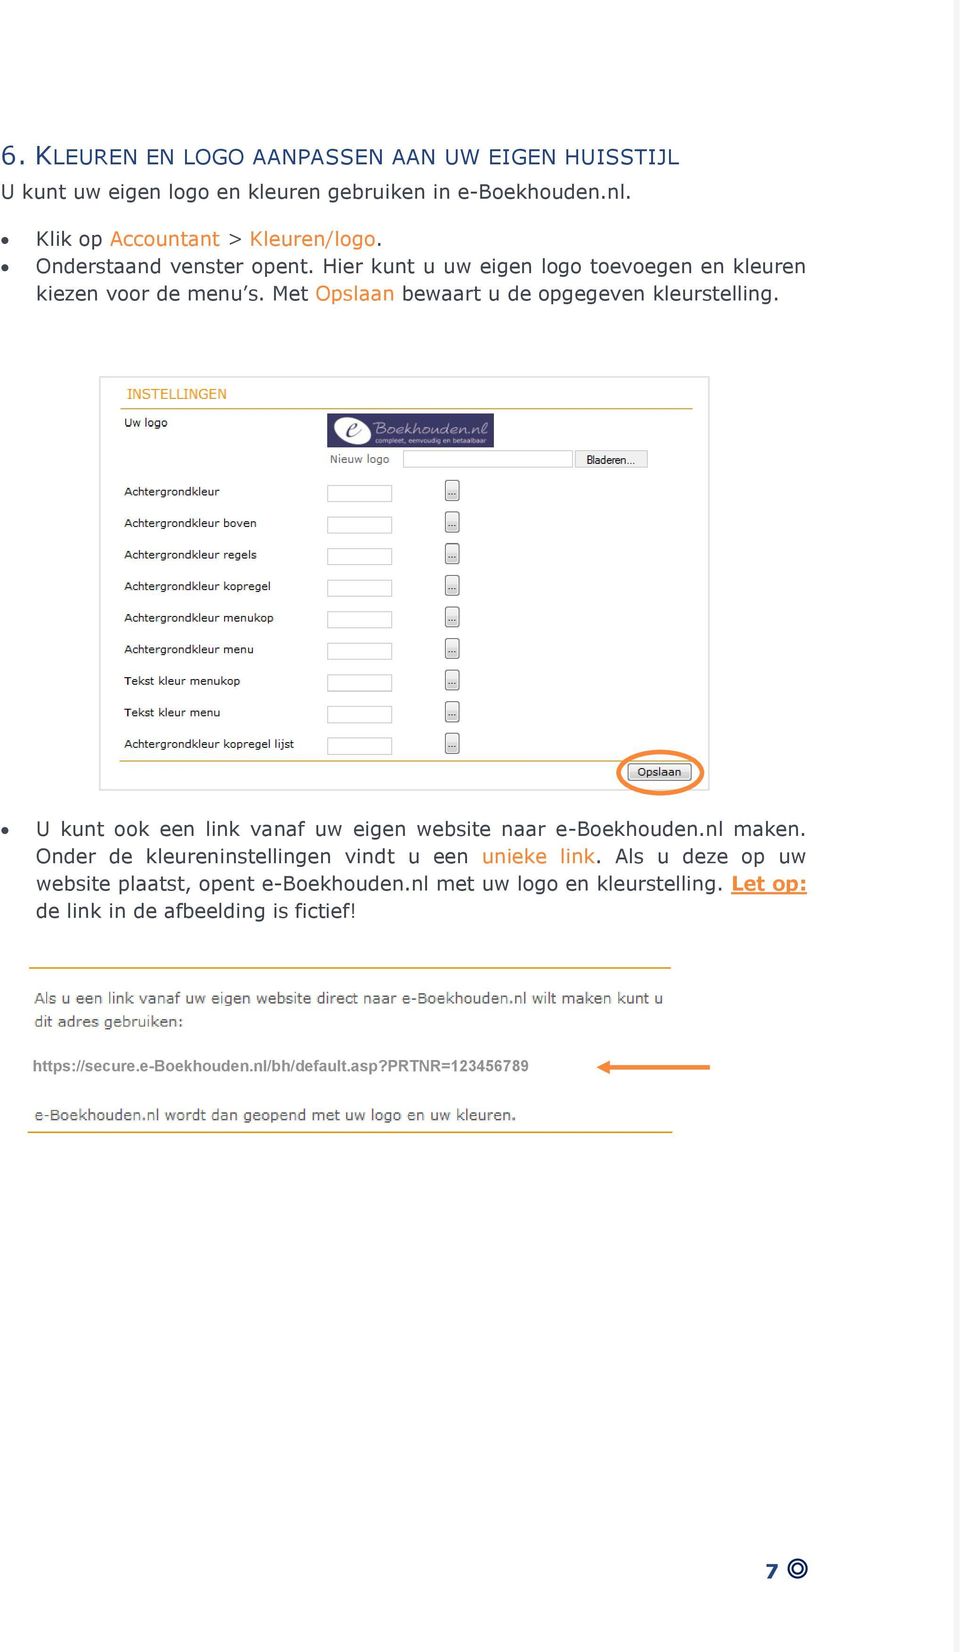 U kunt ook een link vanaf uw eigen website naar e-boekhouden.nl maken. Onder de kleureninstellingen vindt u een unieke link.